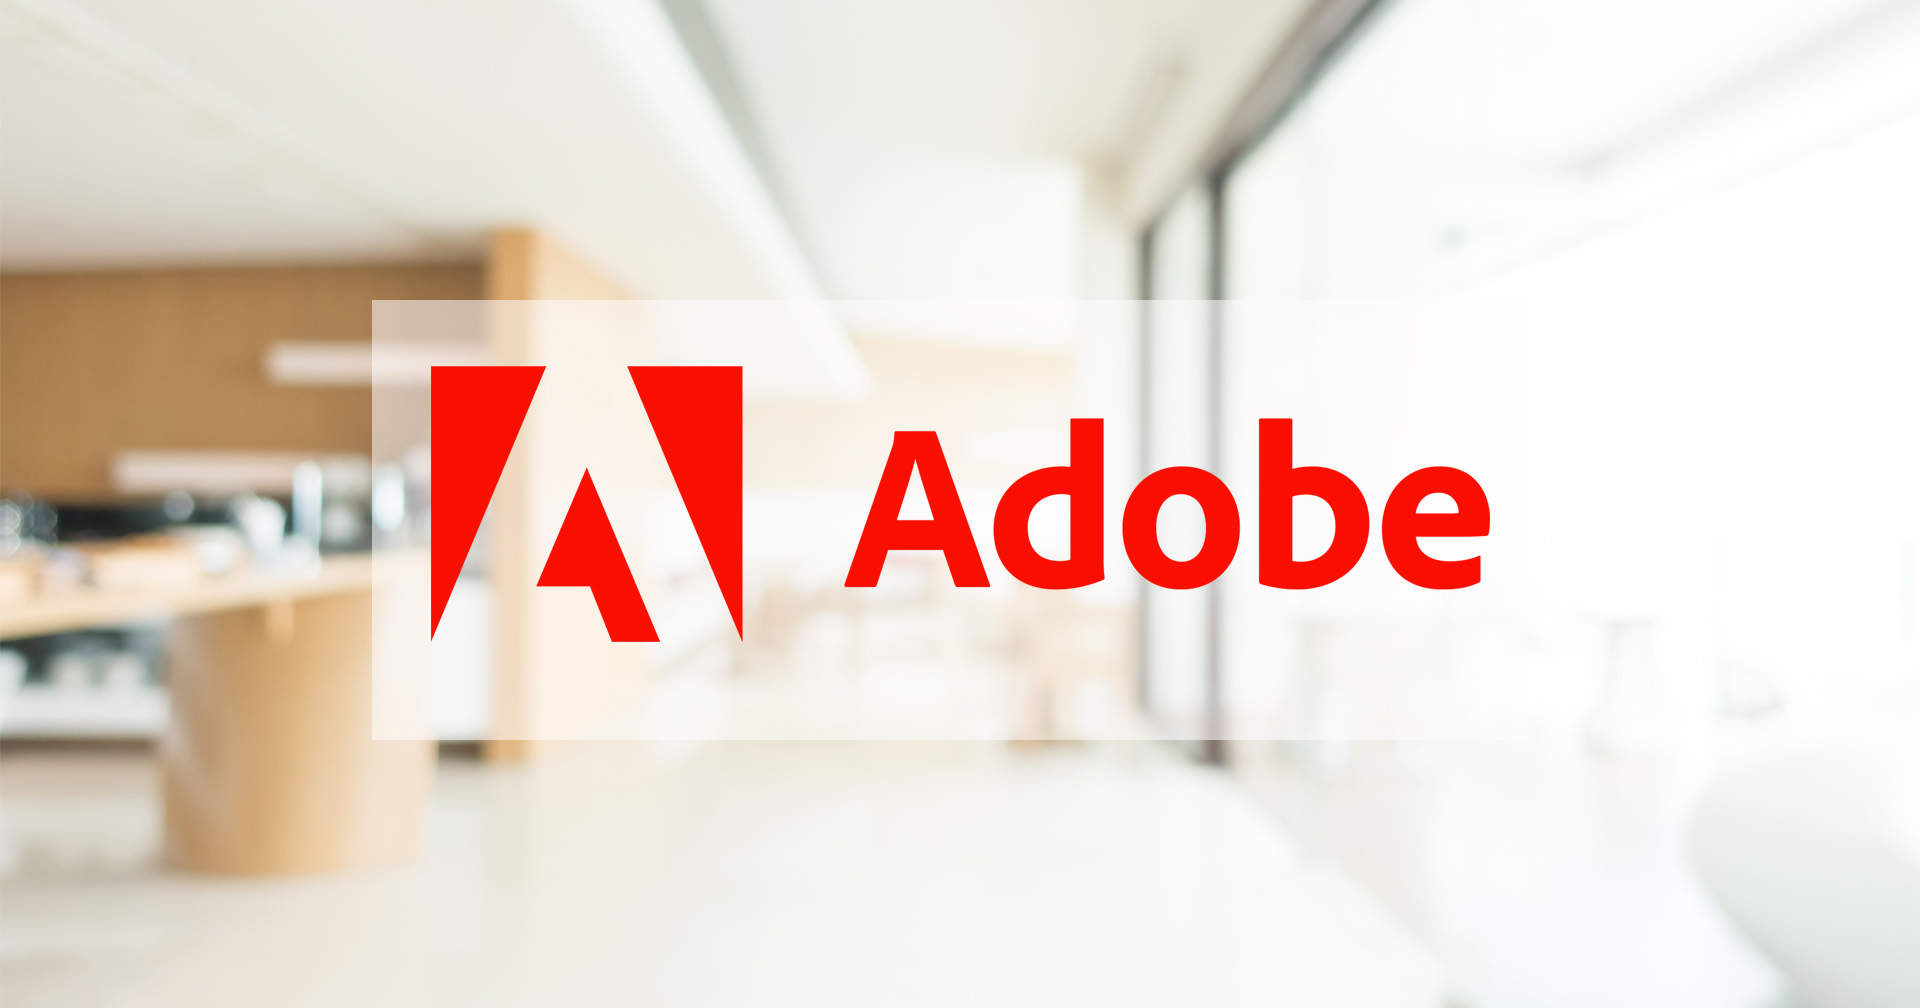 Adobe เปิดสำนักงานในประเทศไทยอย่างเป็นทางการ พร้อมเผยประเทศไทยเป็นตลาดที่สำคัญมาโดยตลอด